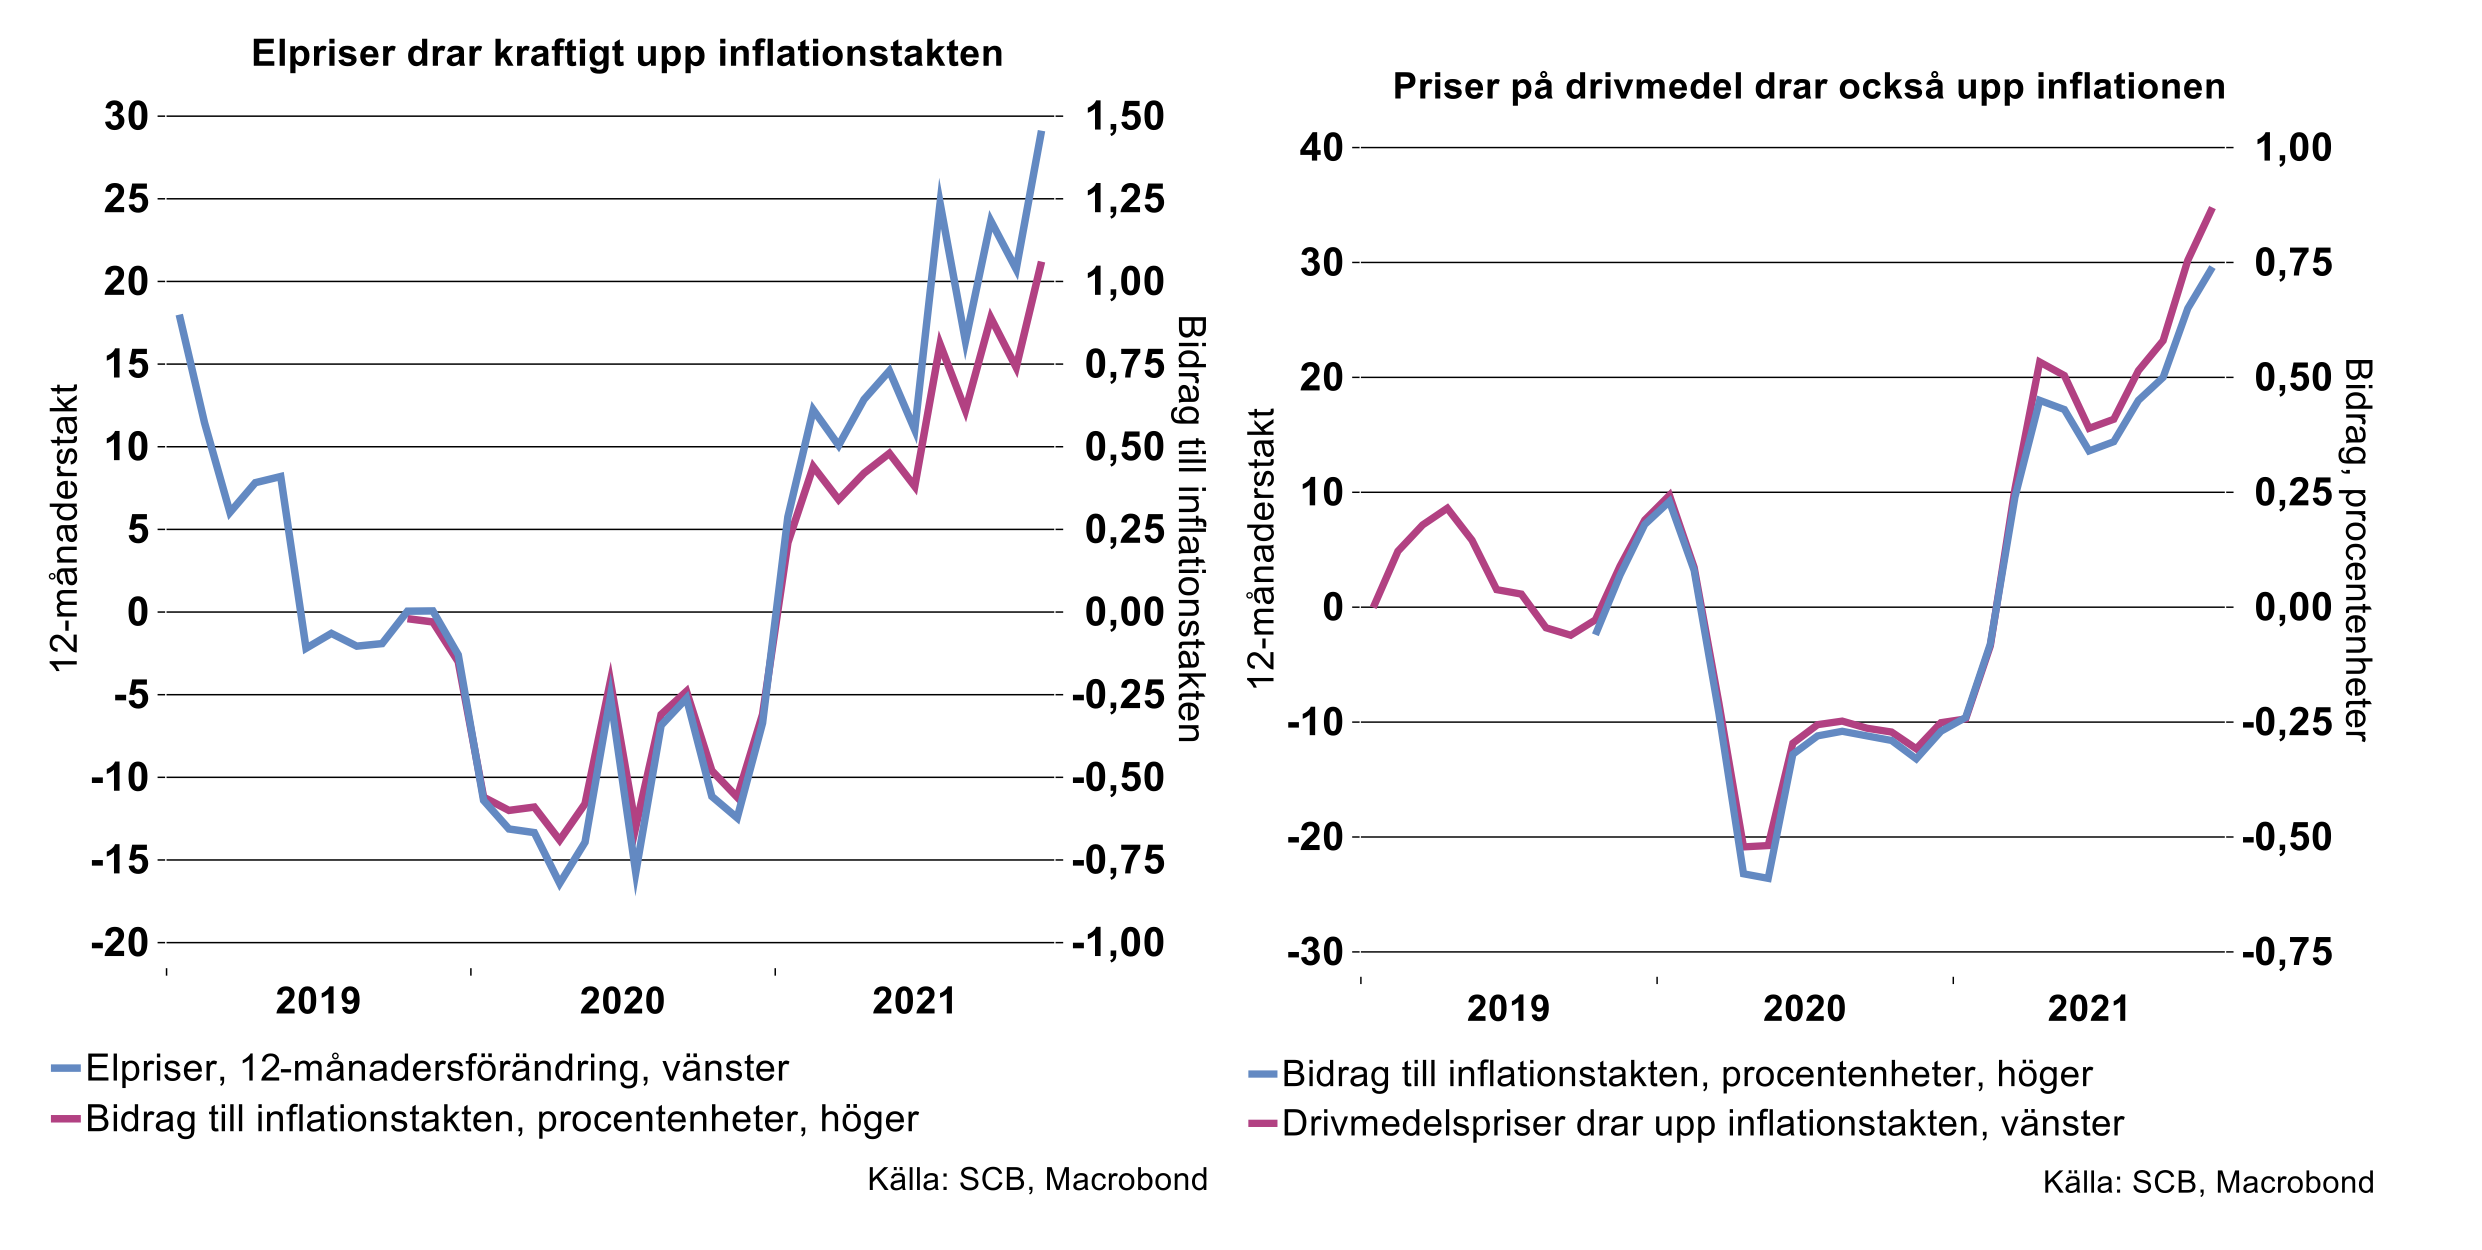 elpriser-drar-kraftigt-upp-inflationstakten-priser-pa-drivmedel-drar-ocksa-upp-inflationen.png